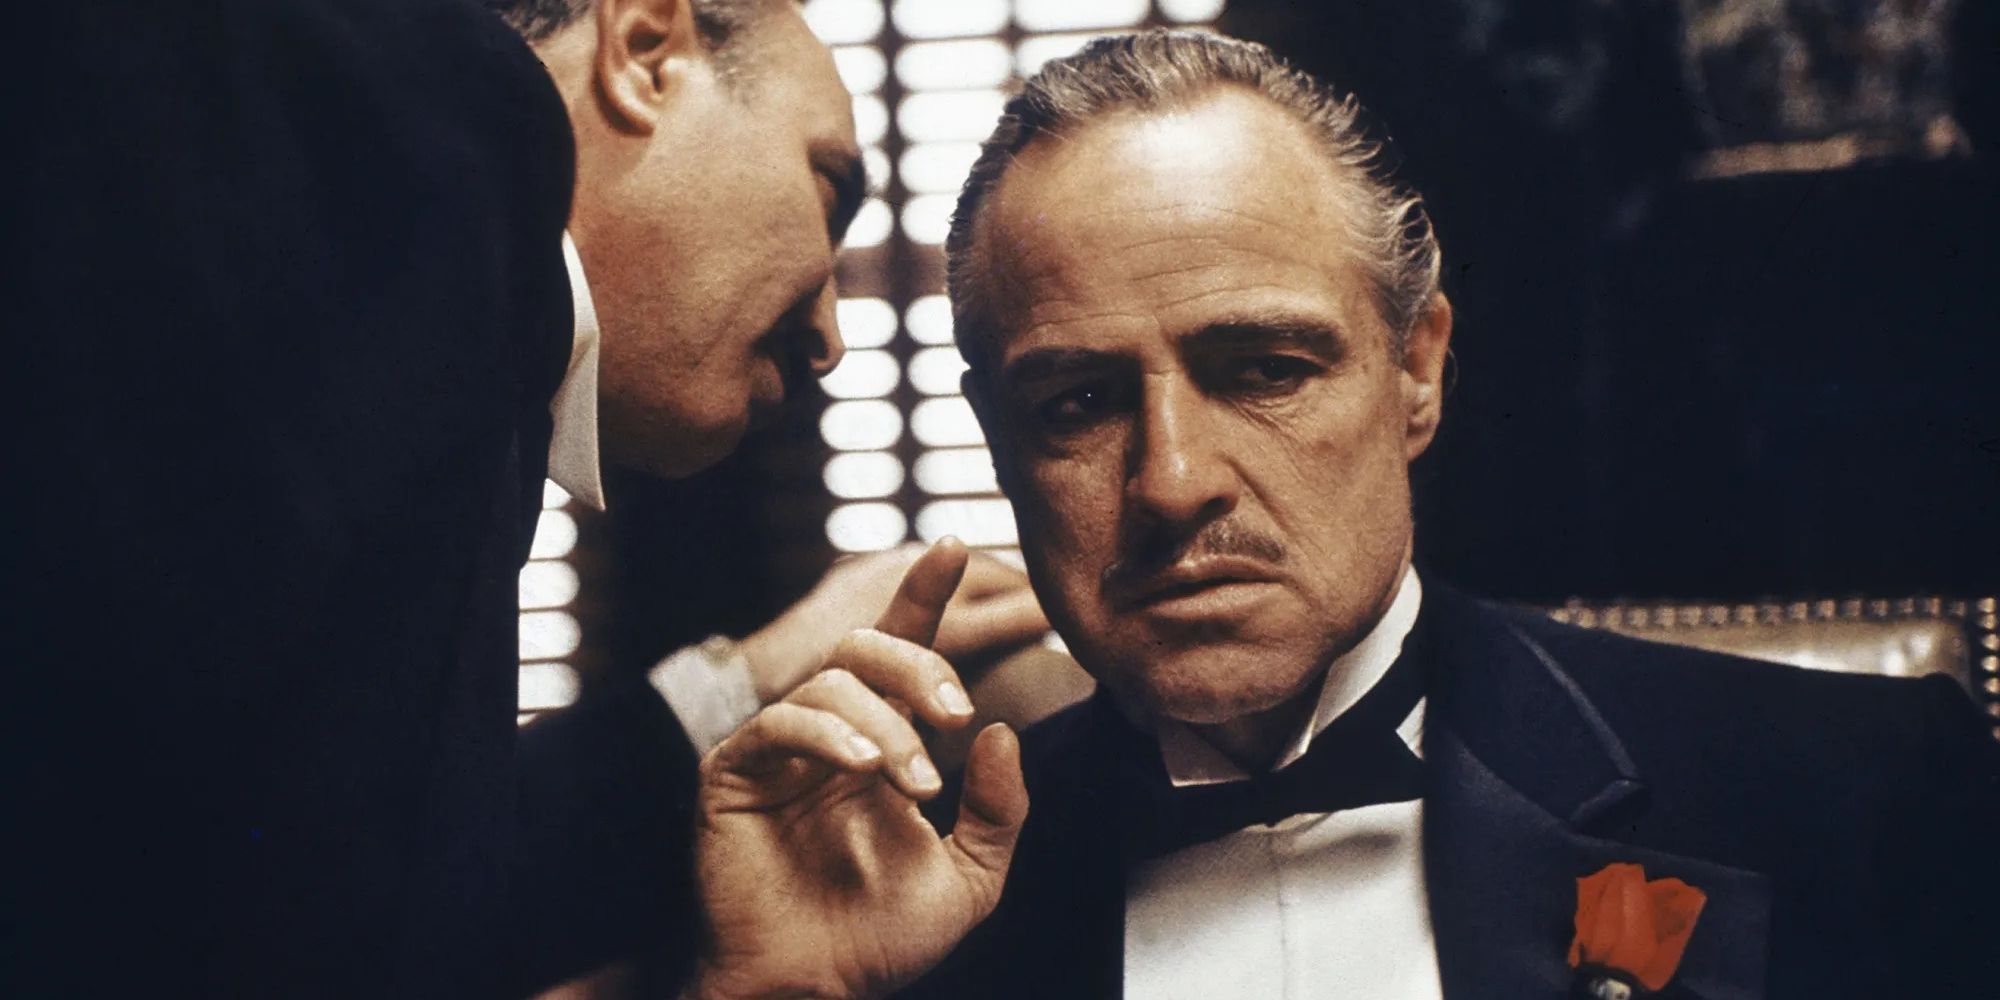 Don Vito Corleone in The Godfather